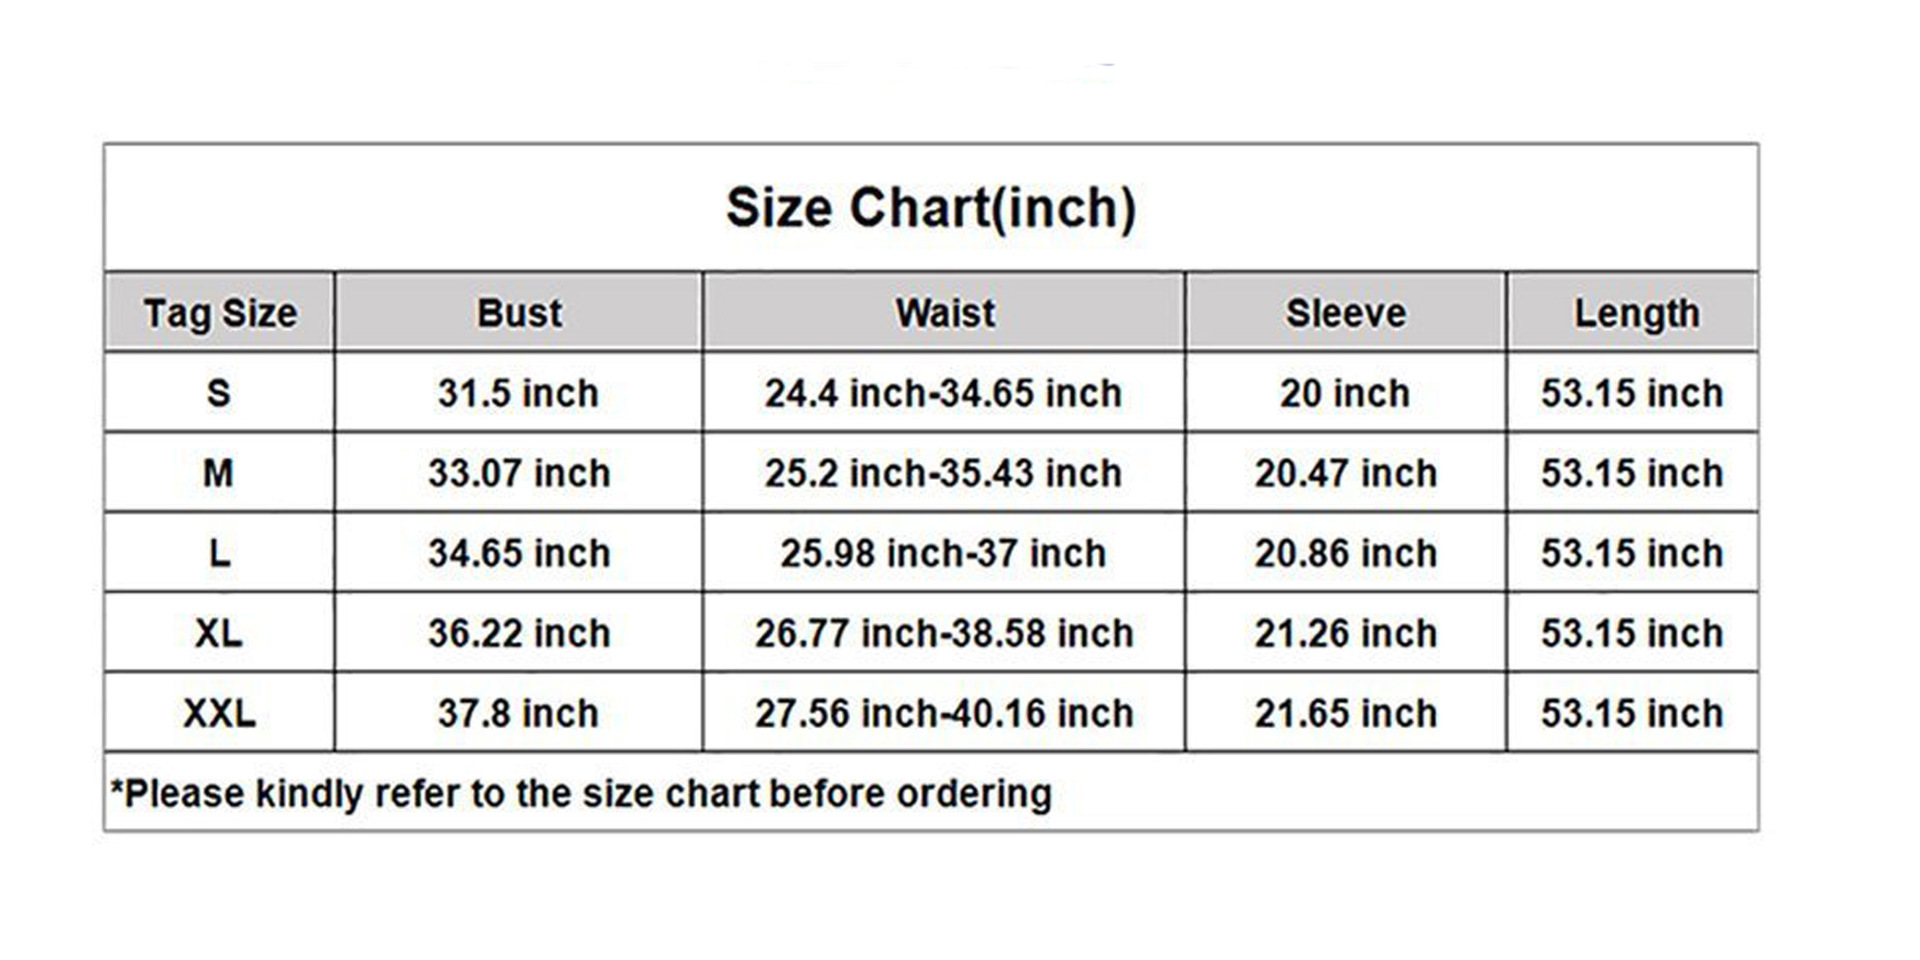 Maternity Dress Size Chart